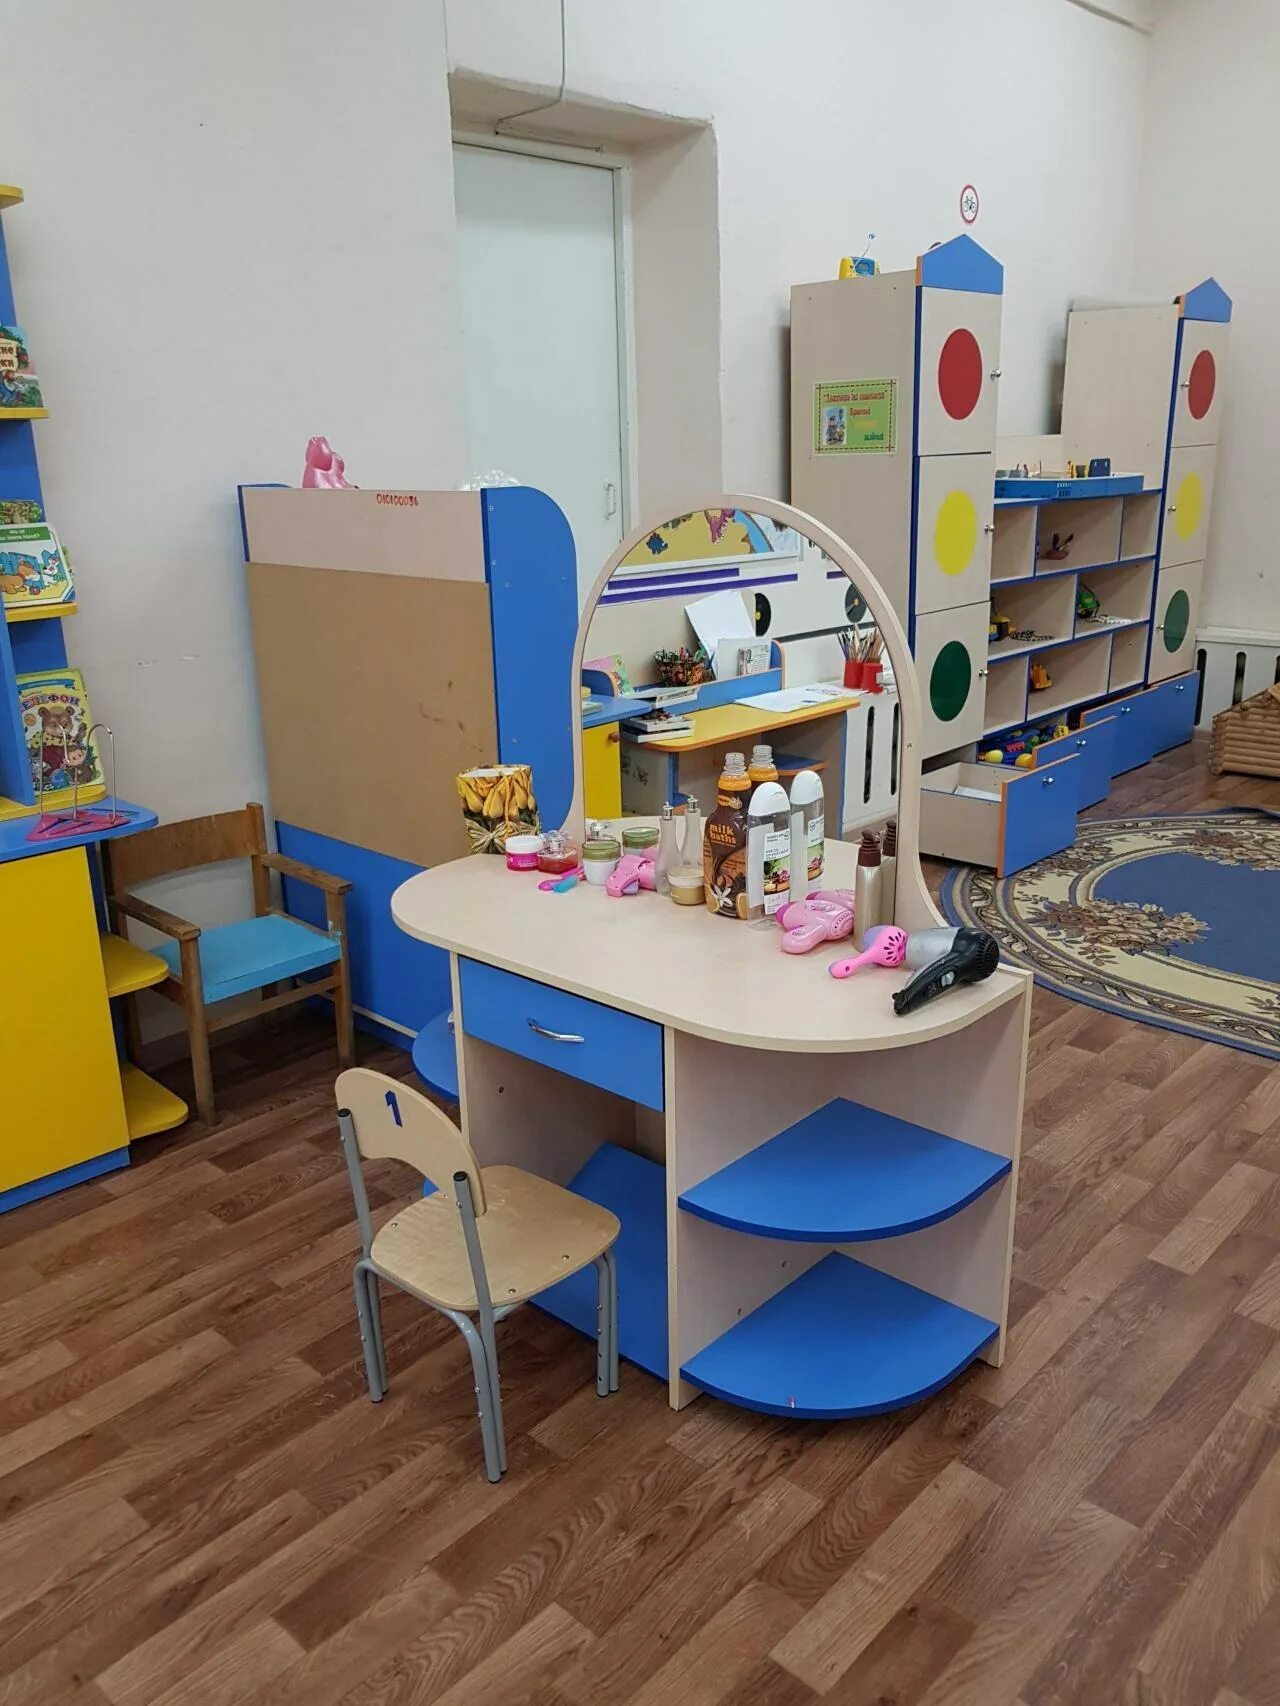 Производство детских садов. Мебель для детского сада. Детская мебель для детского сада. Игровая мебель для детского сада. Мебель для игровых уголков в детском саду.